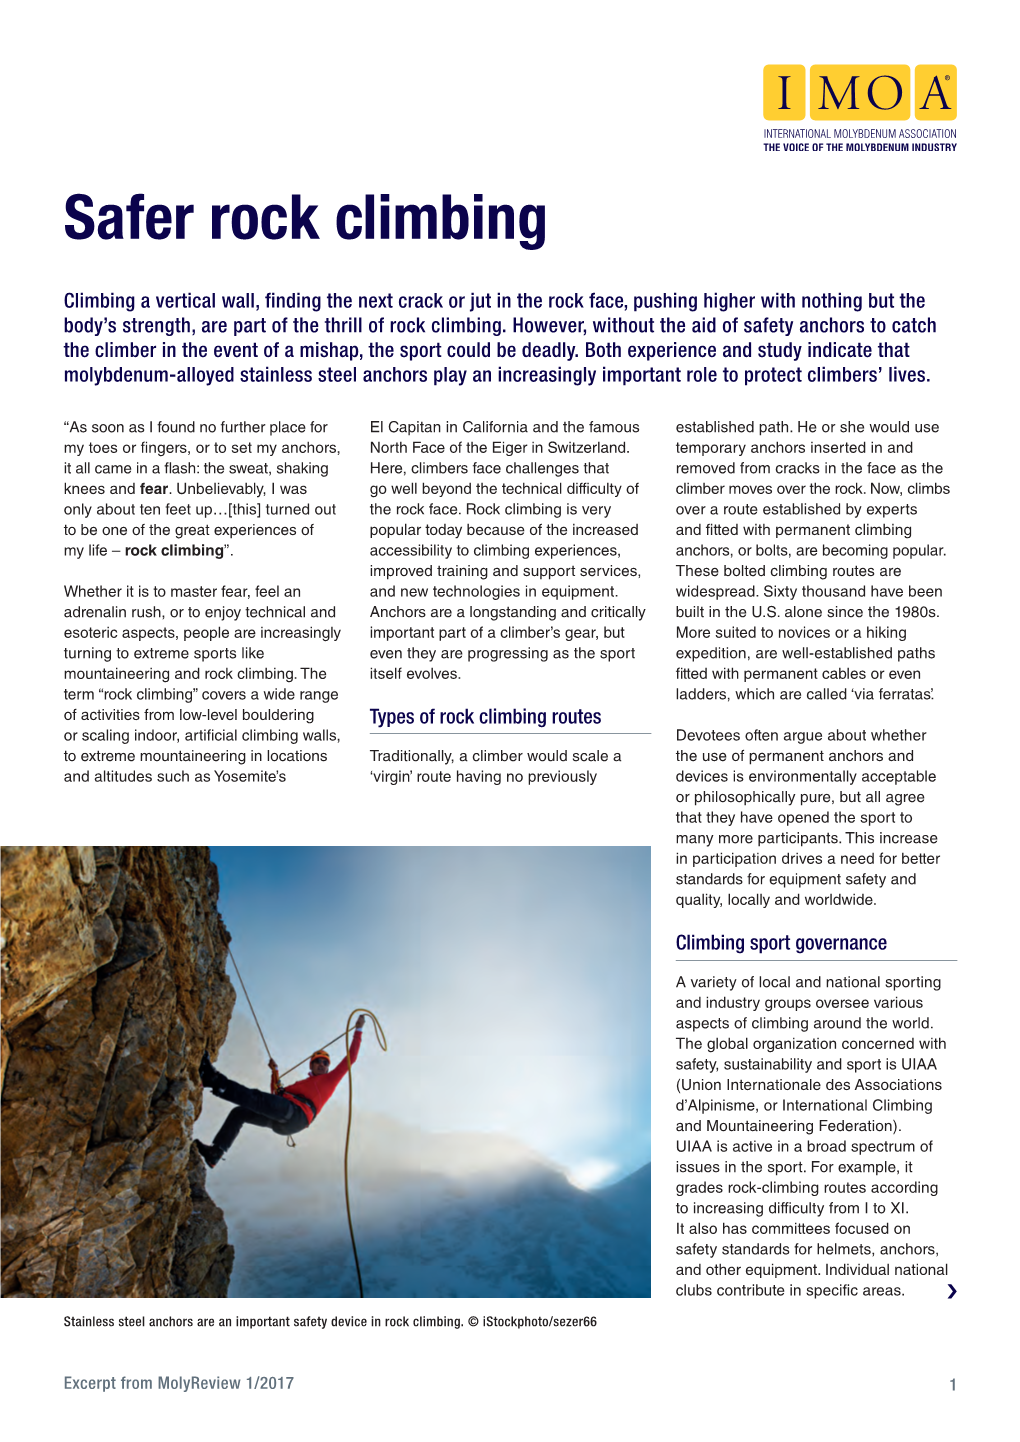 Safer Rock Climbing